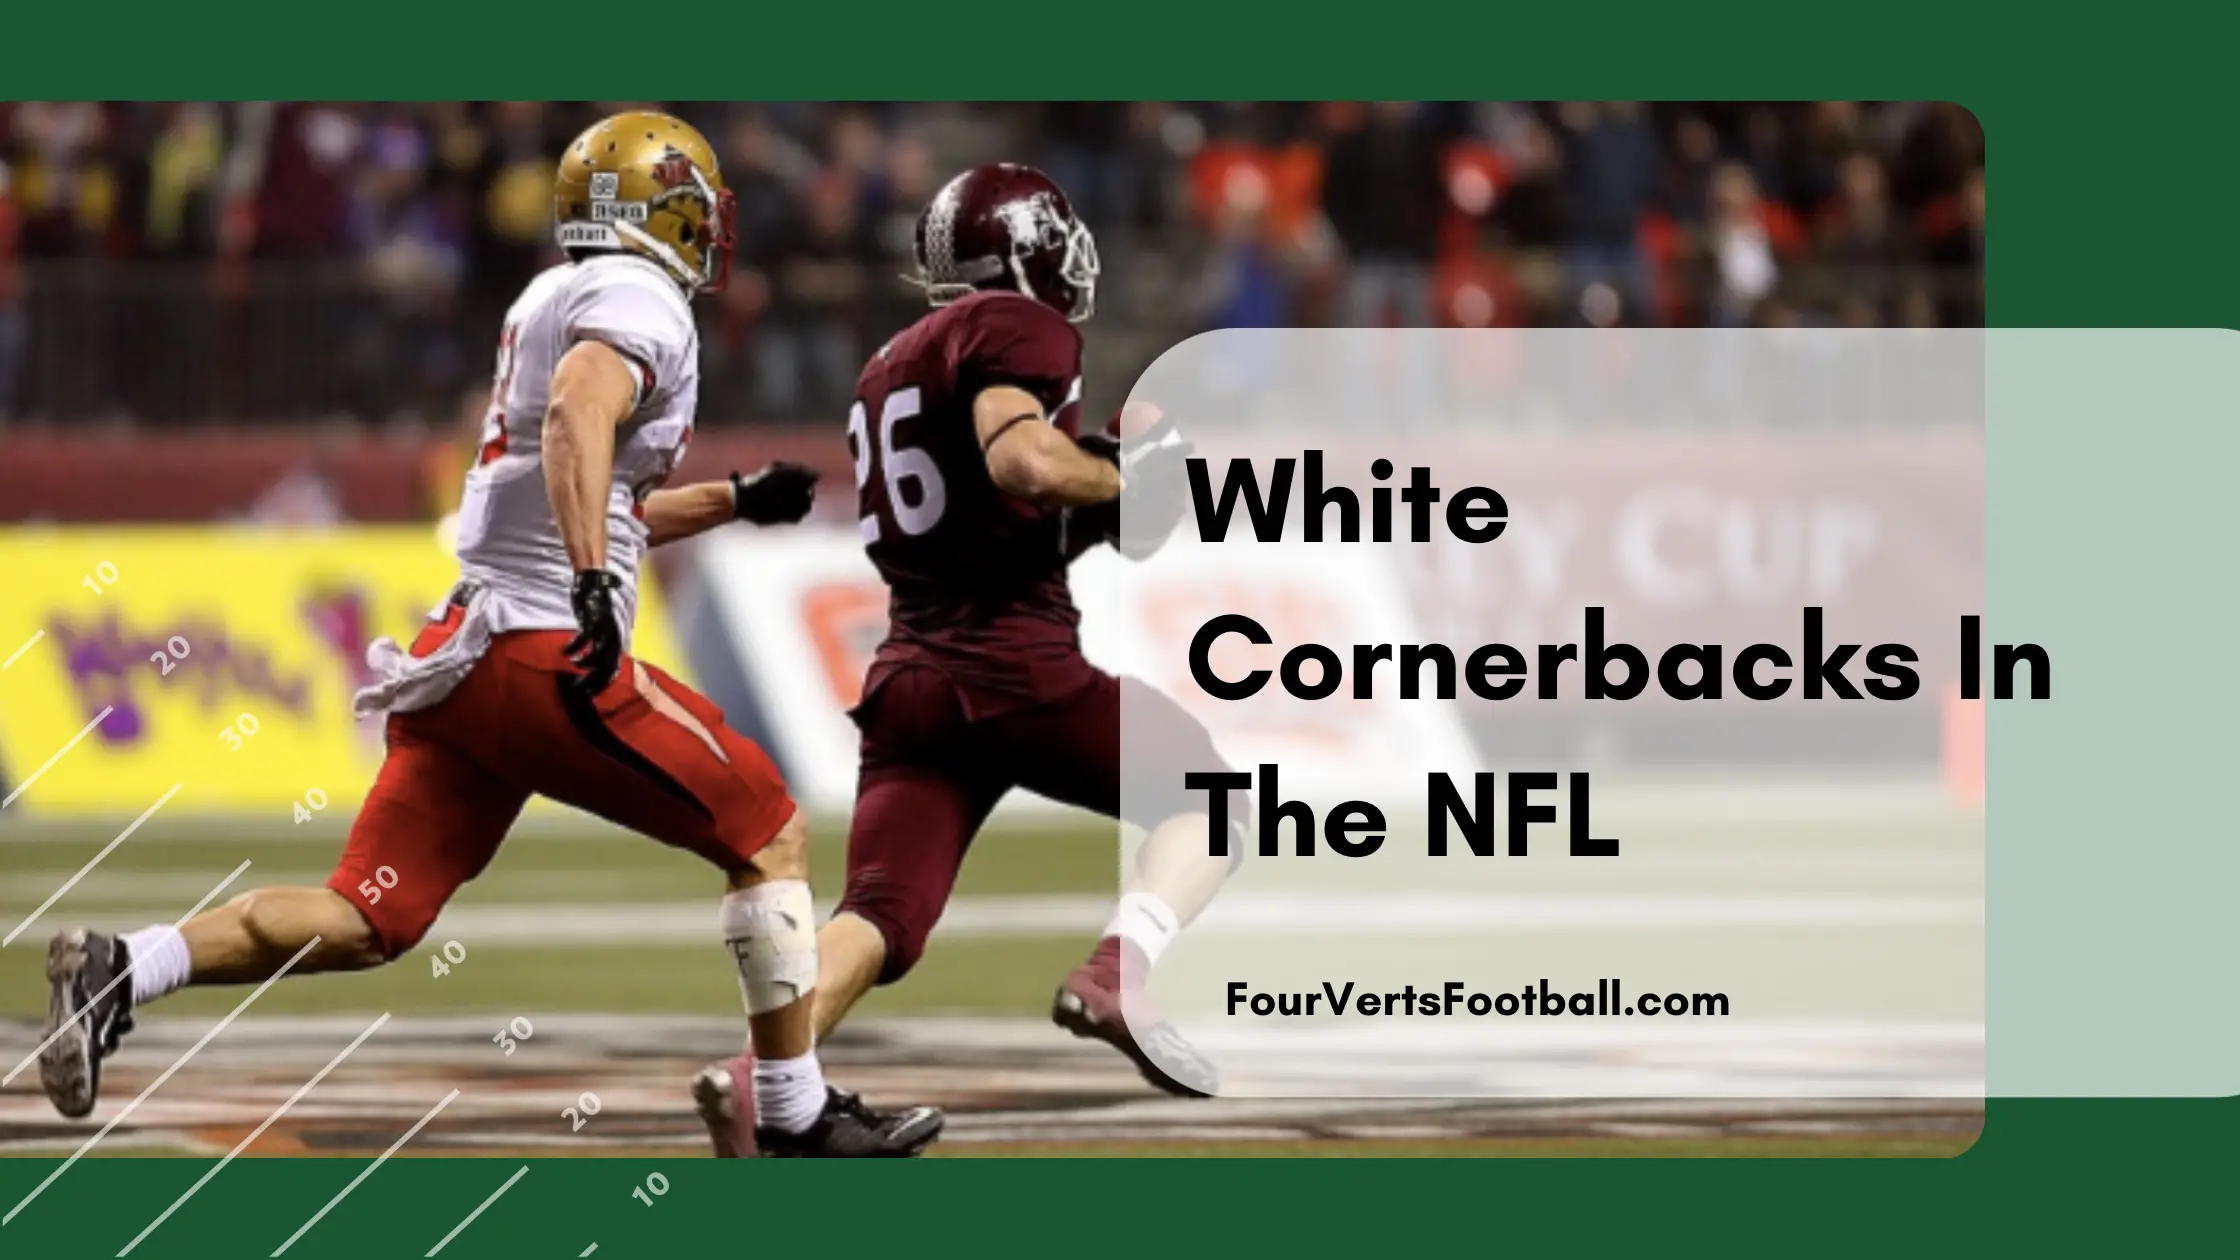 White cornerbacks in the NFL